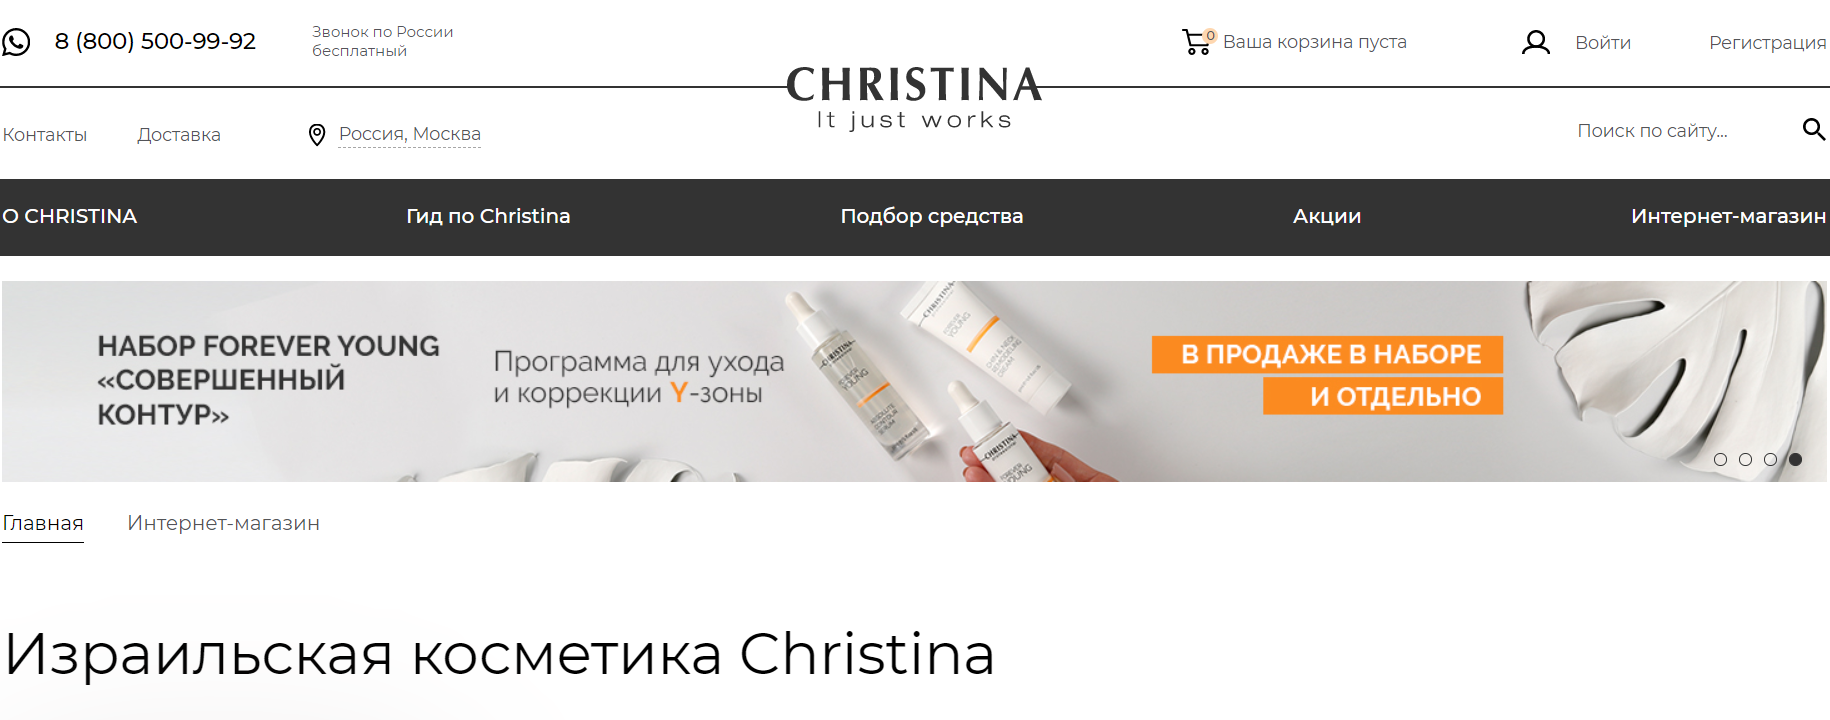 Christina официальный сайт интернет-магазина